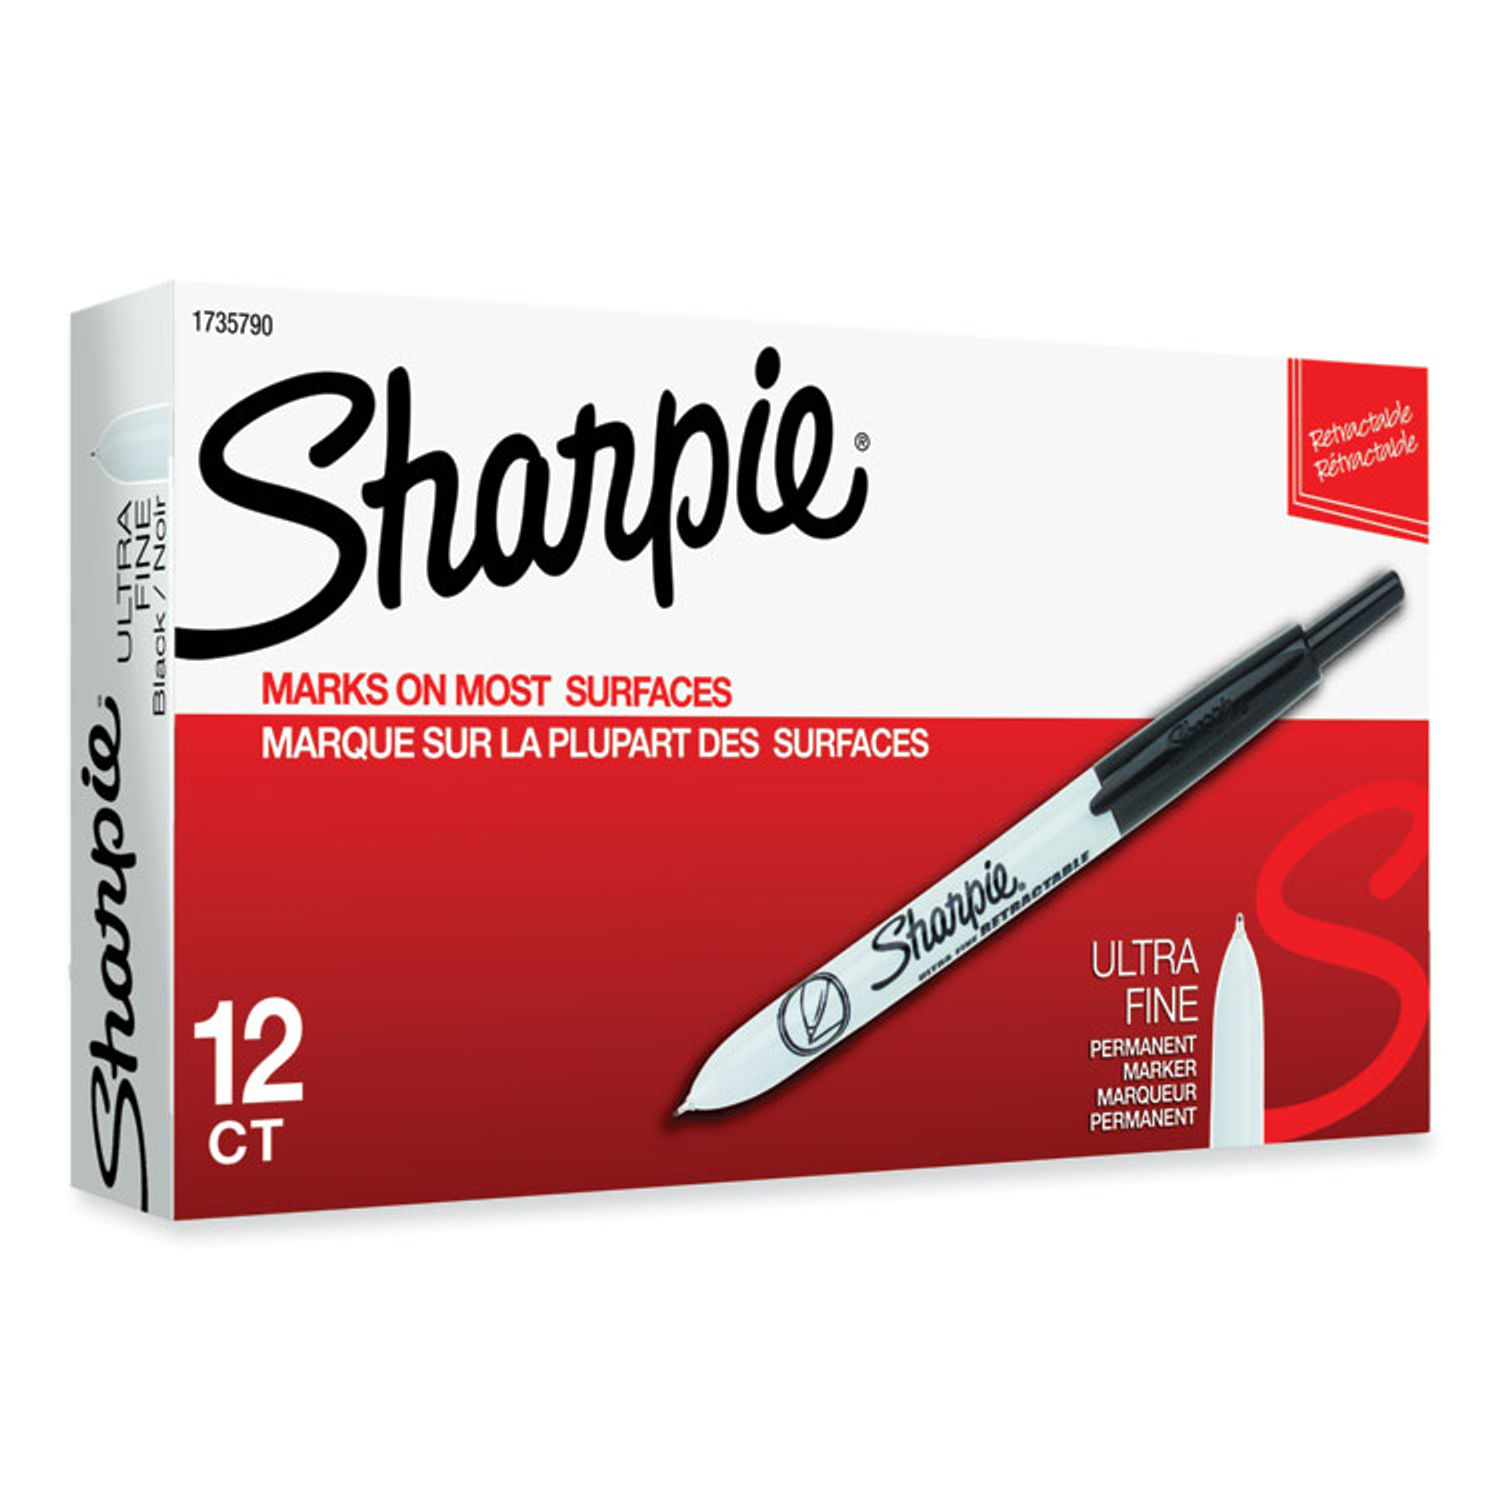 Sharpie - Marqueur permanent - Noir